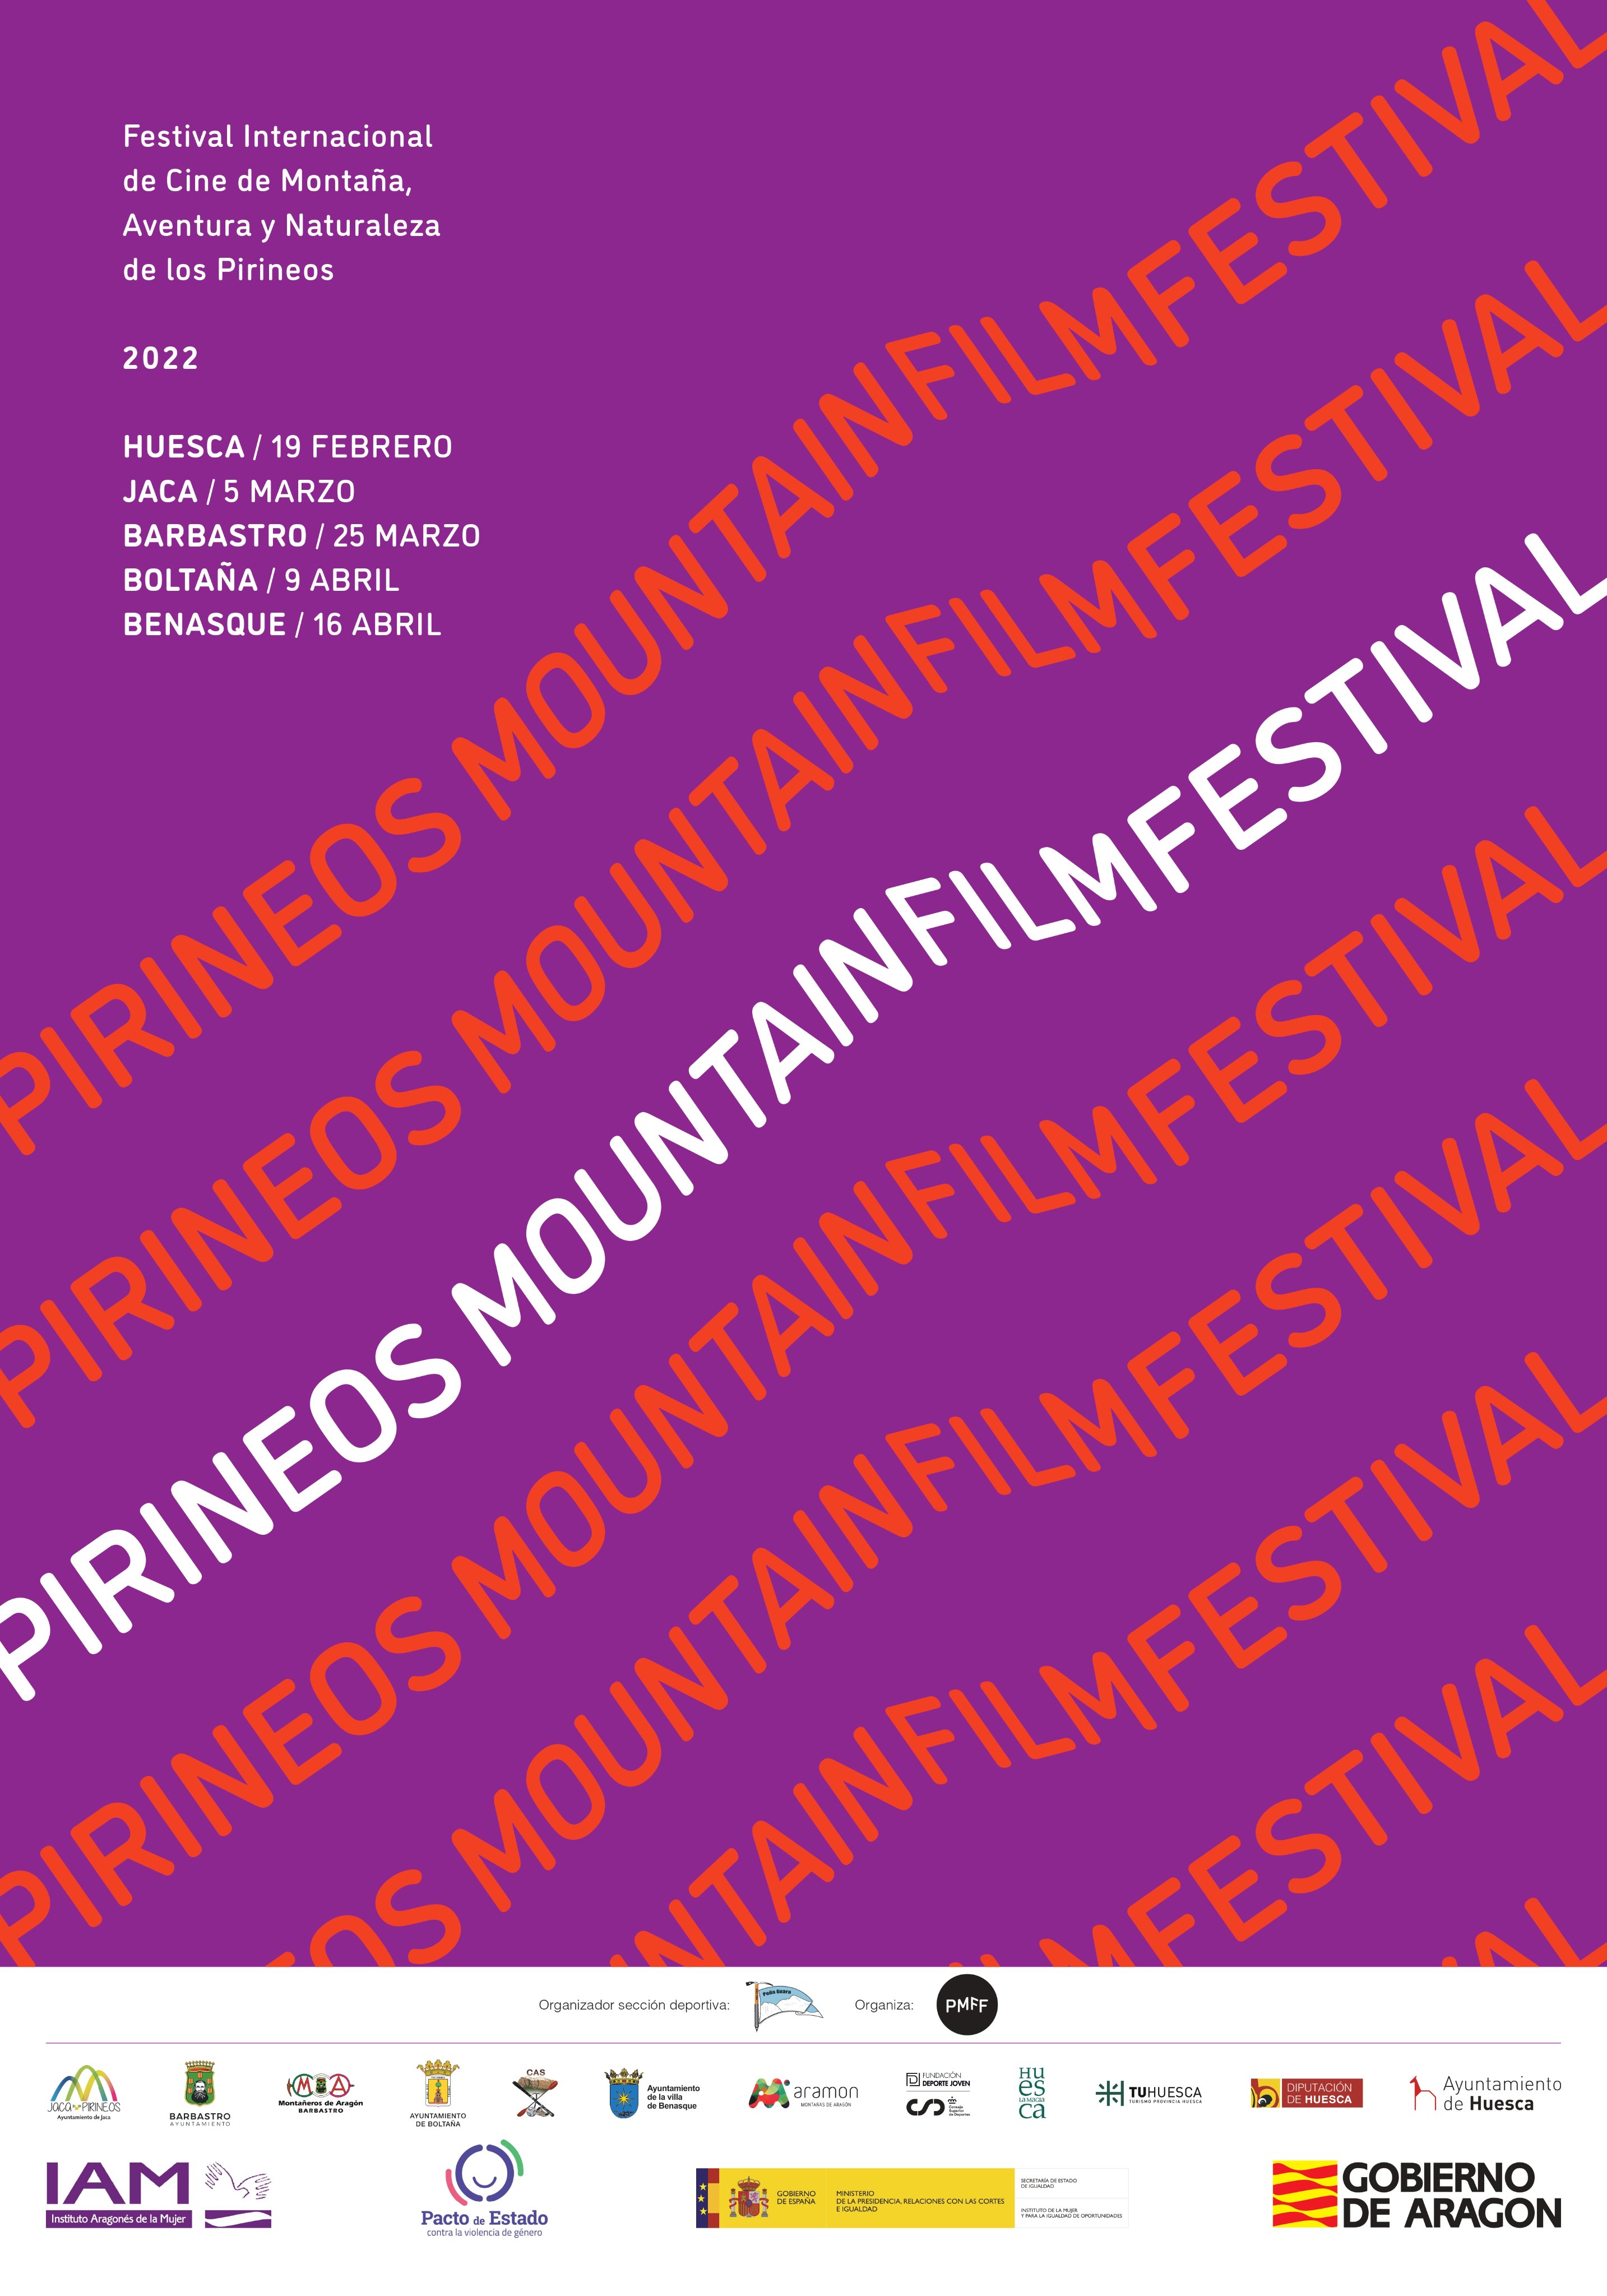 Nace el Pirineos Mountain Film Festival como referente internacional para cortometrajes de montaña, aventura y naturaleza